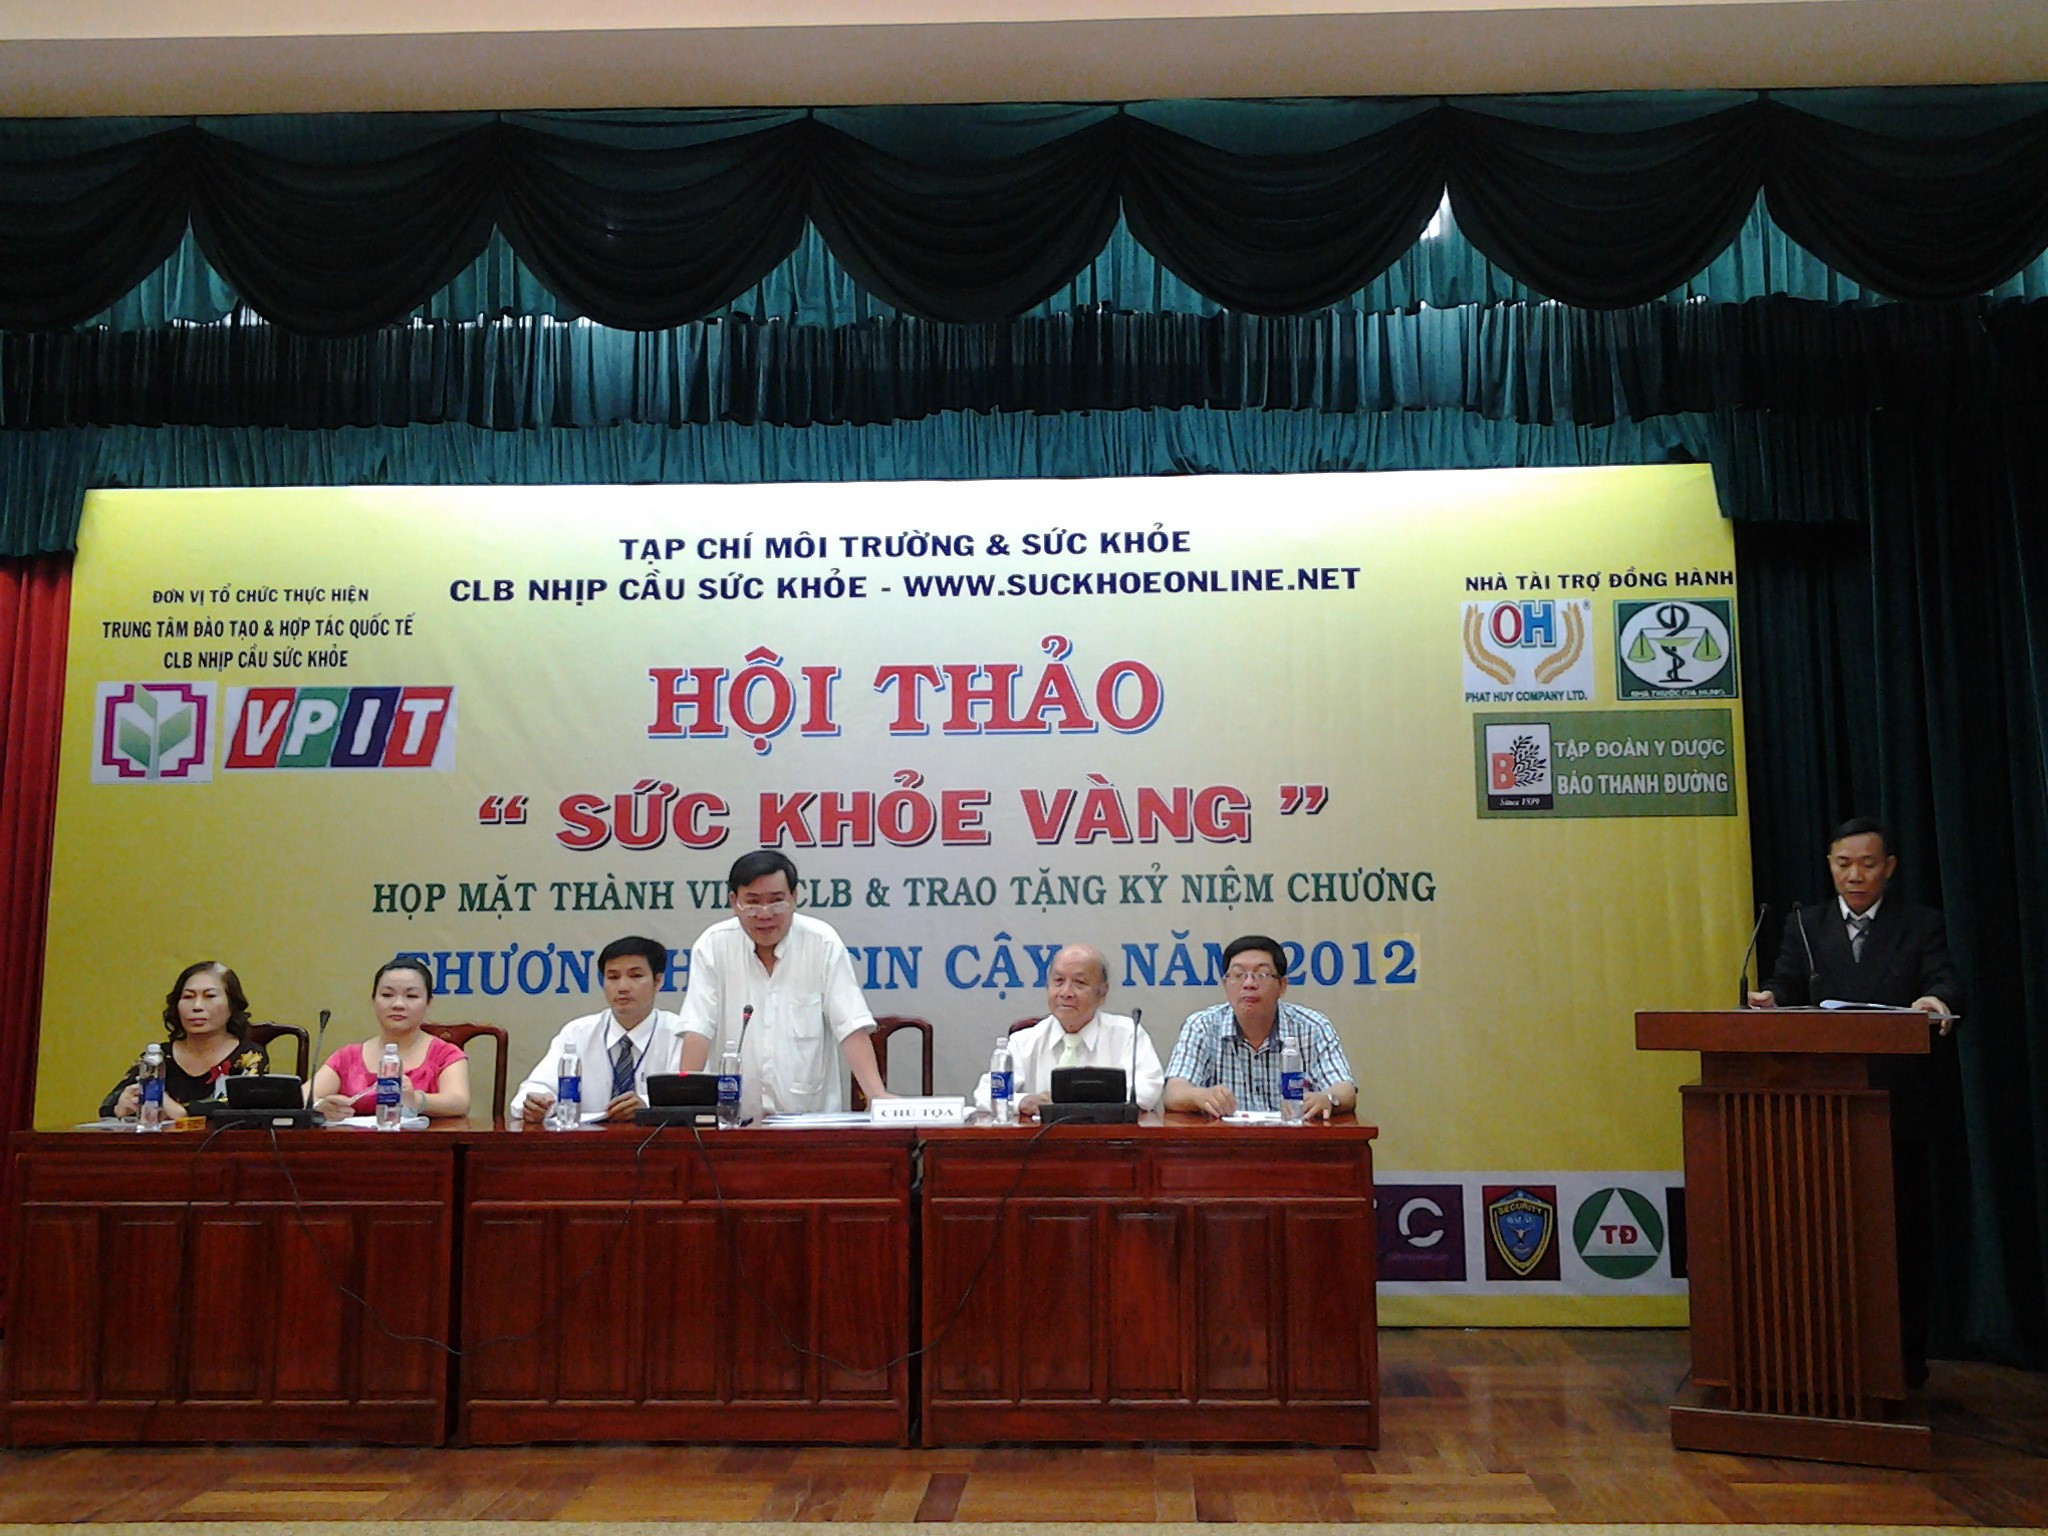 Tiến sỹ Mộc Quế (người đang phát biểu) nêu bật tầm quan trọng của YHCT Việt Nam và vai trò, ý nghĩa của Tập Đoàn Y Dược Bảo Thanh Đường – trong bước phát triển và hội nhập